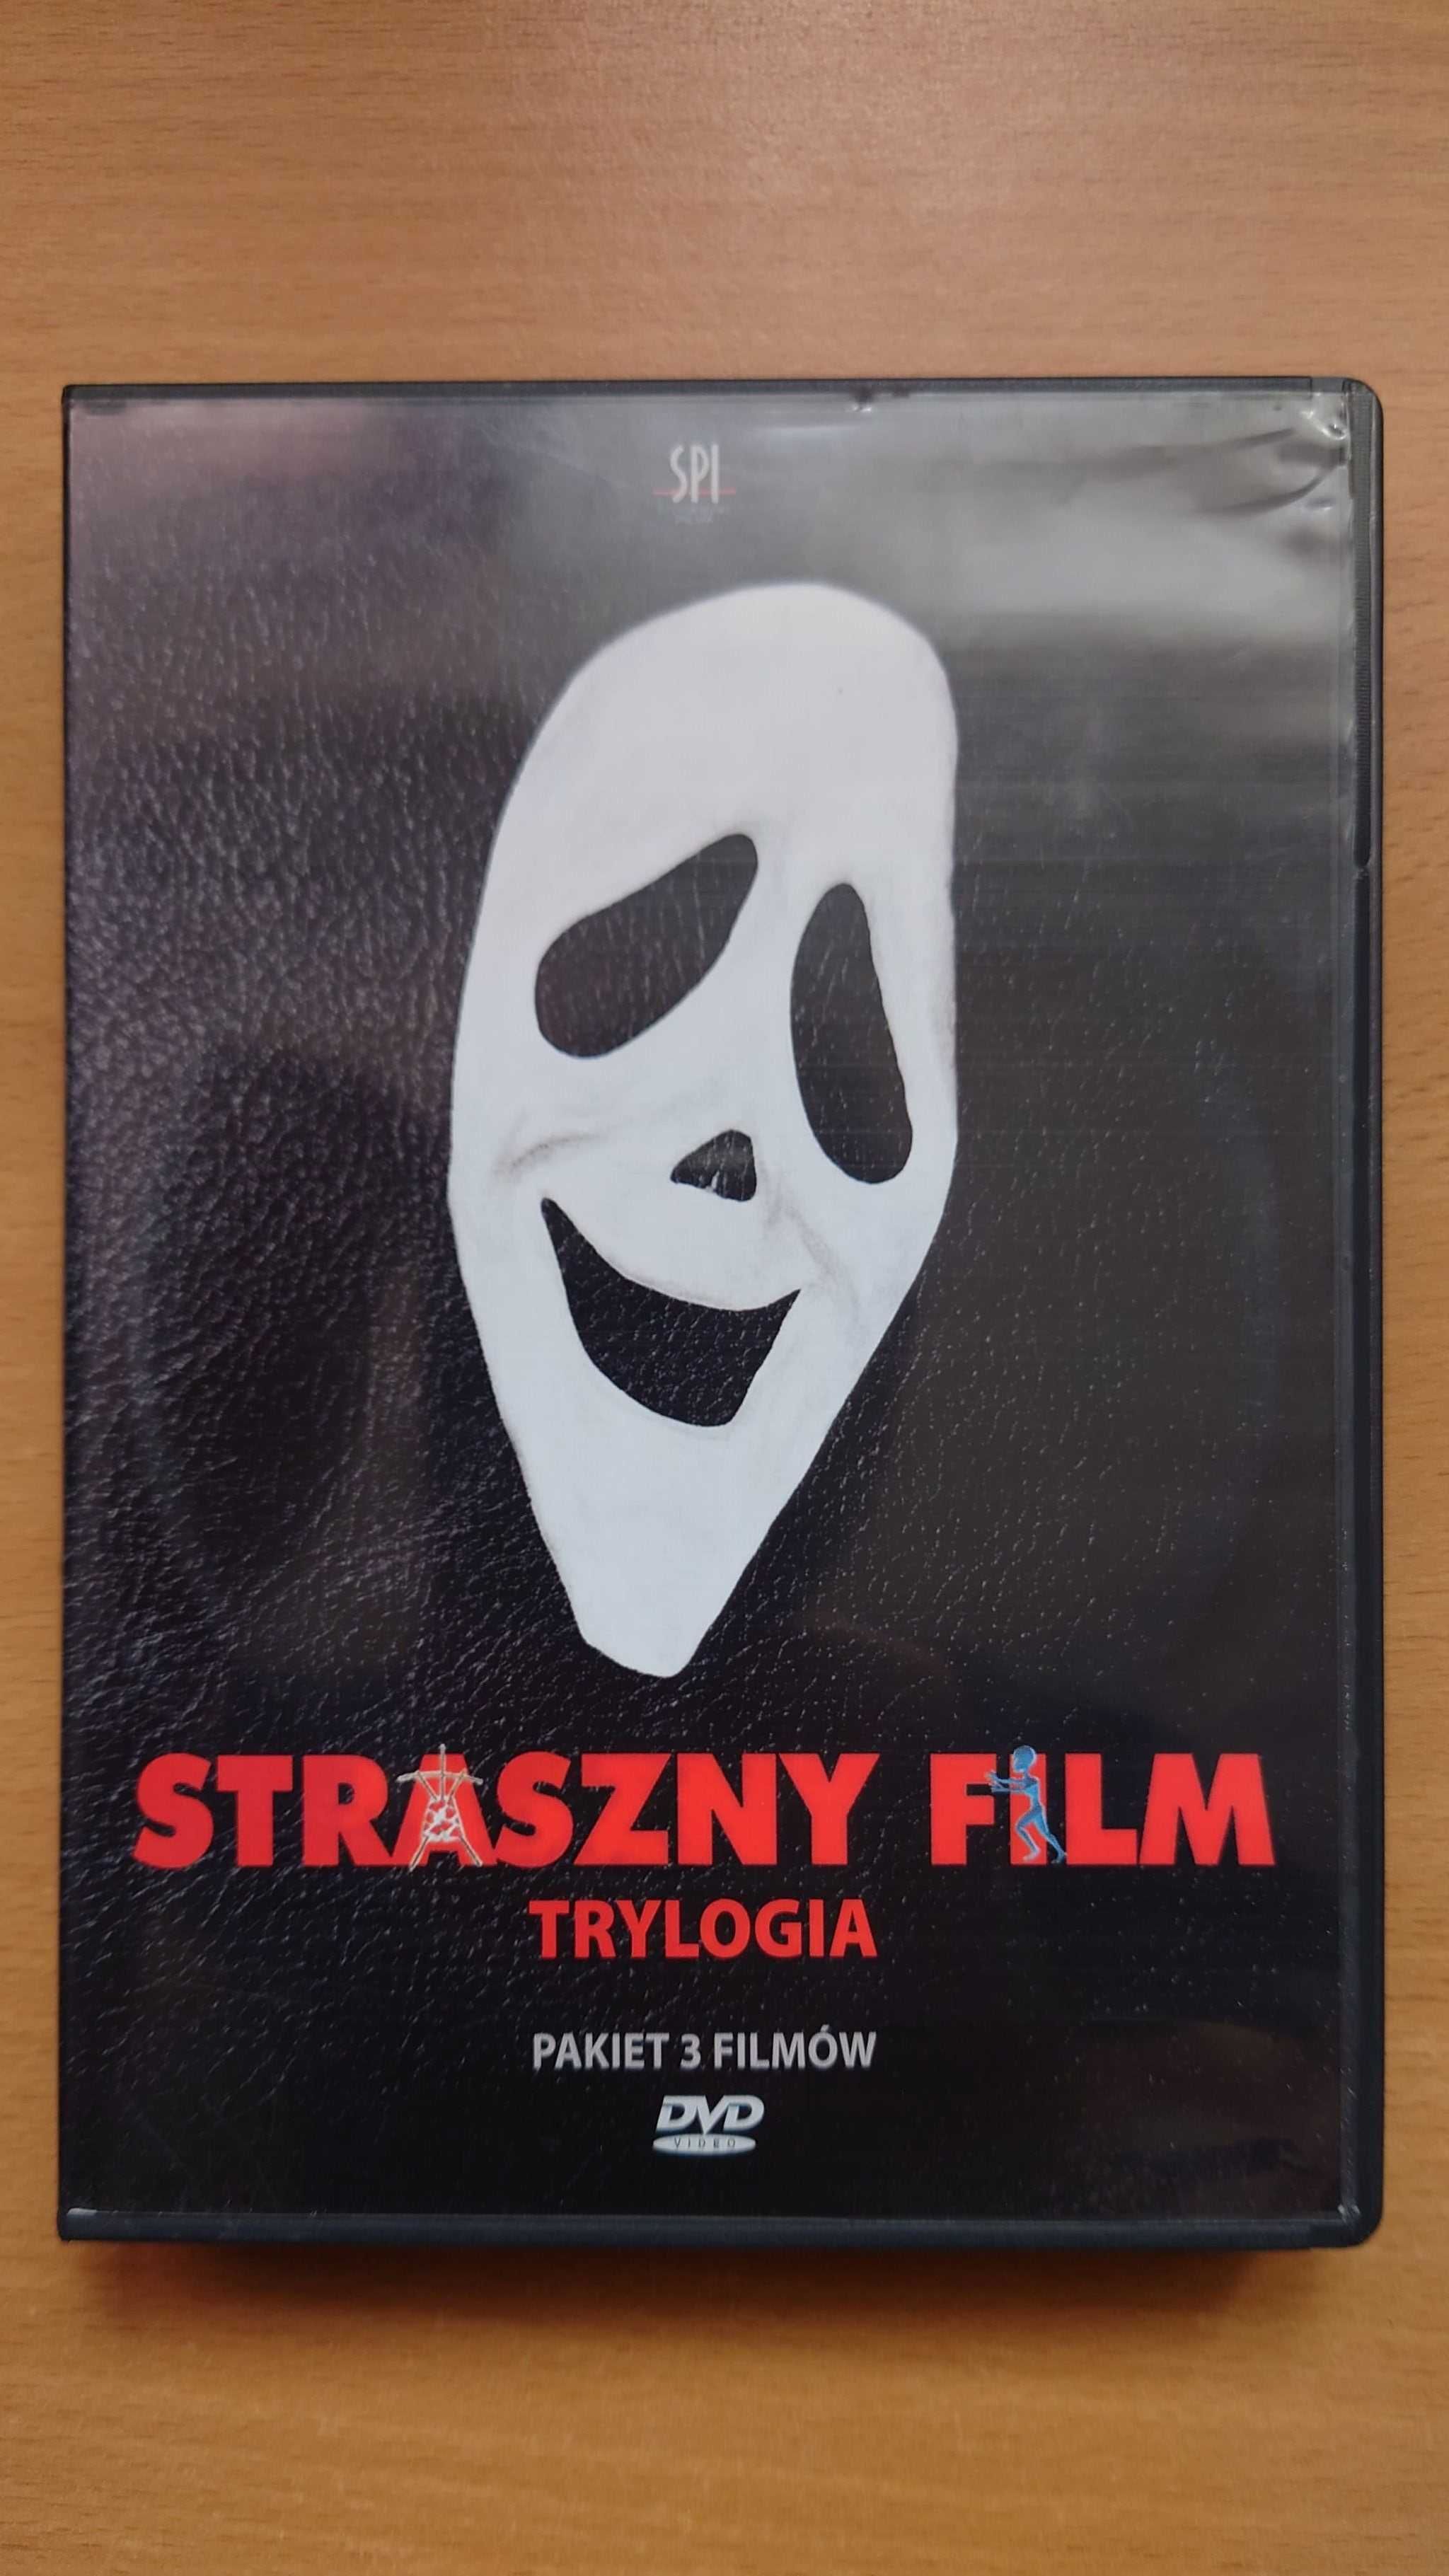 Straszny film - Trylogia (DVD)